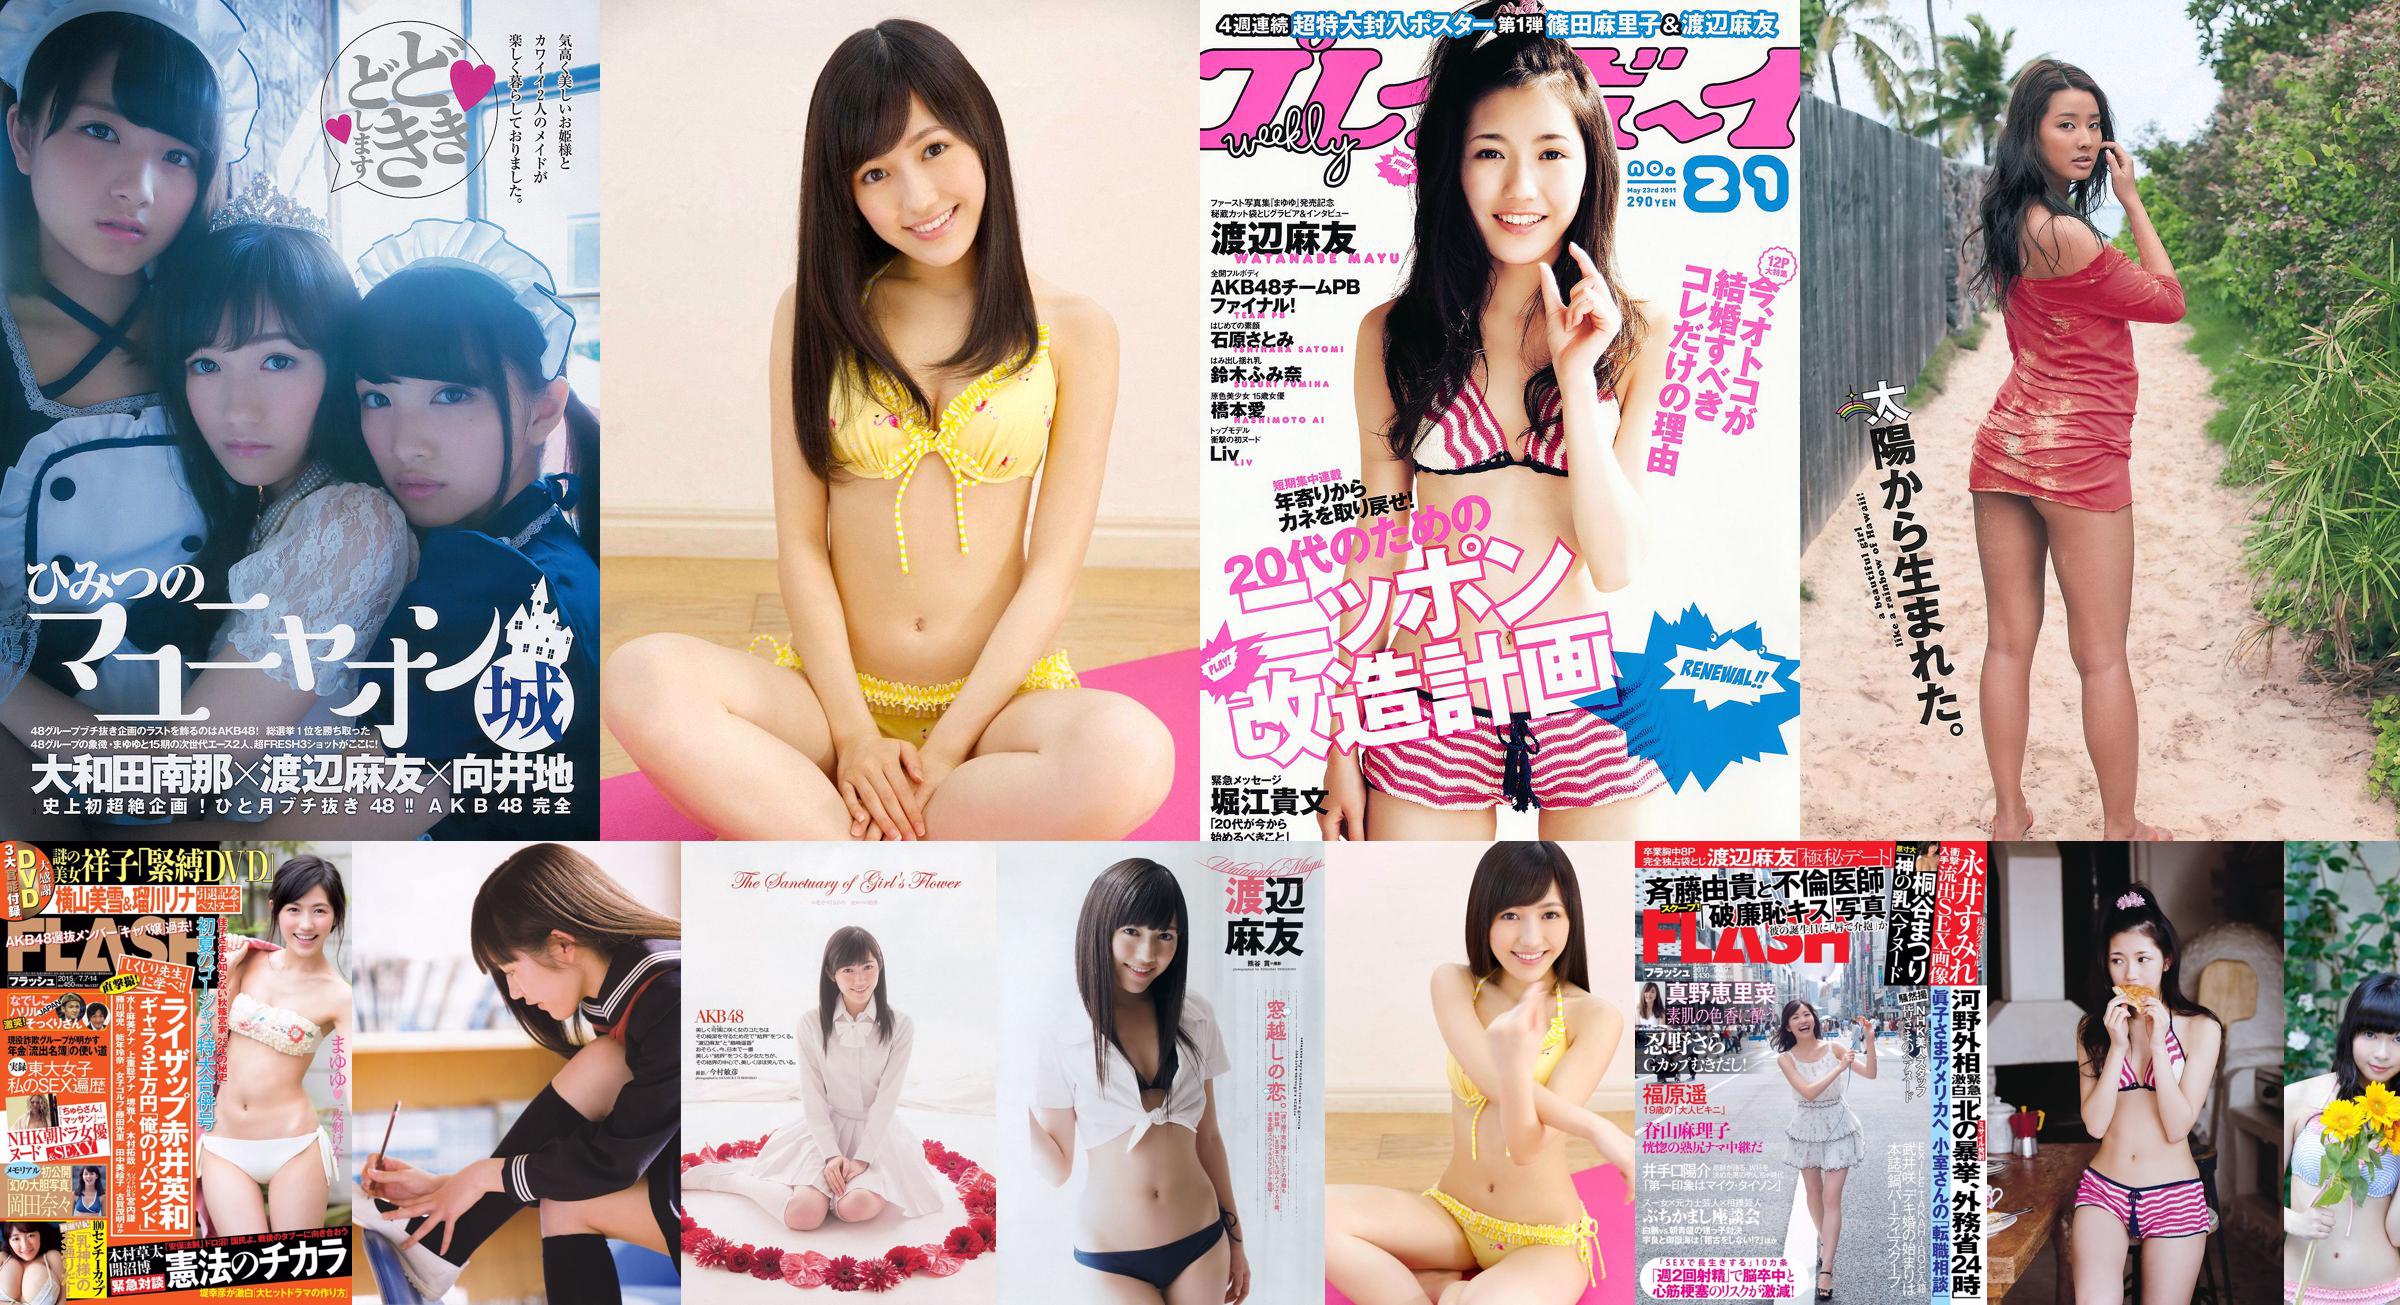 Mayu Watanabe Haruka Shimazaki Ruriko Kojima Riho Iida Naabo Tofu @ Nana [Playboy settimanale] 2013 No.09 Foto Toshi No.4afb1a Pagina 1